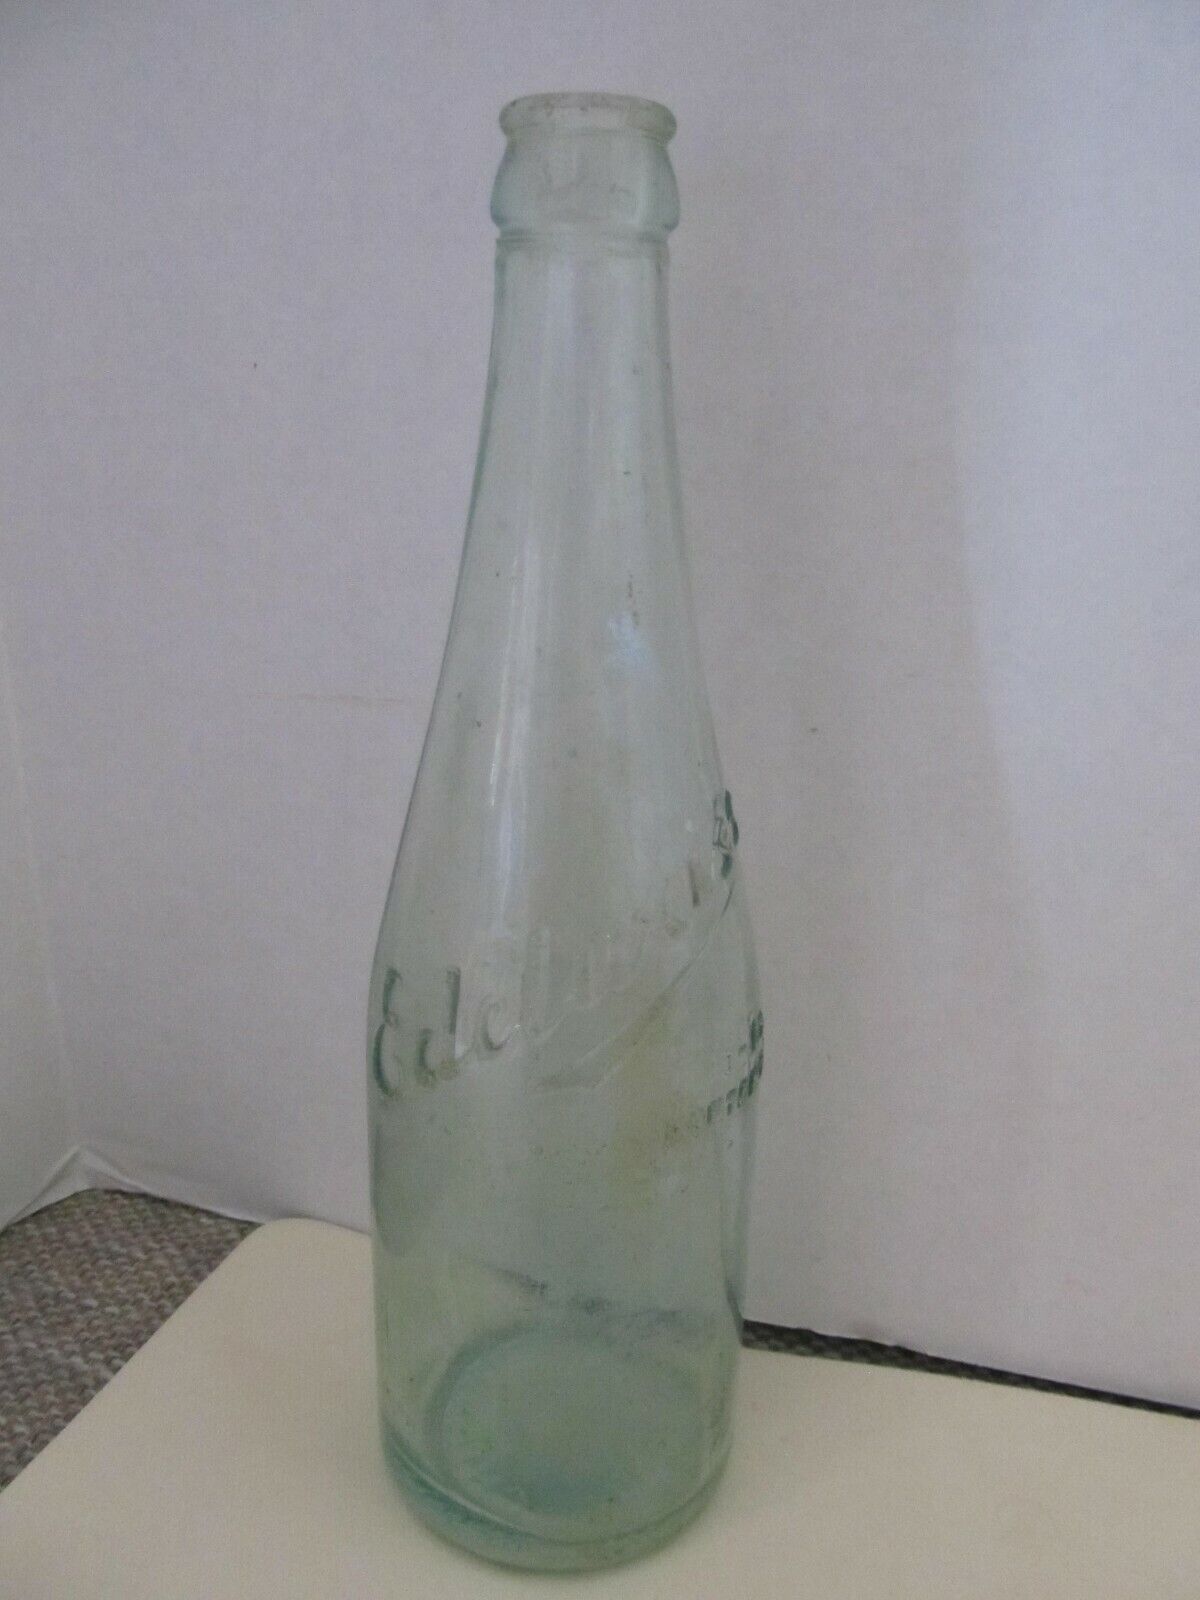 EDELWEISS 13oz Green Glass Bottle w/Embossed Lettering~Schoenhoffen Brewing Co